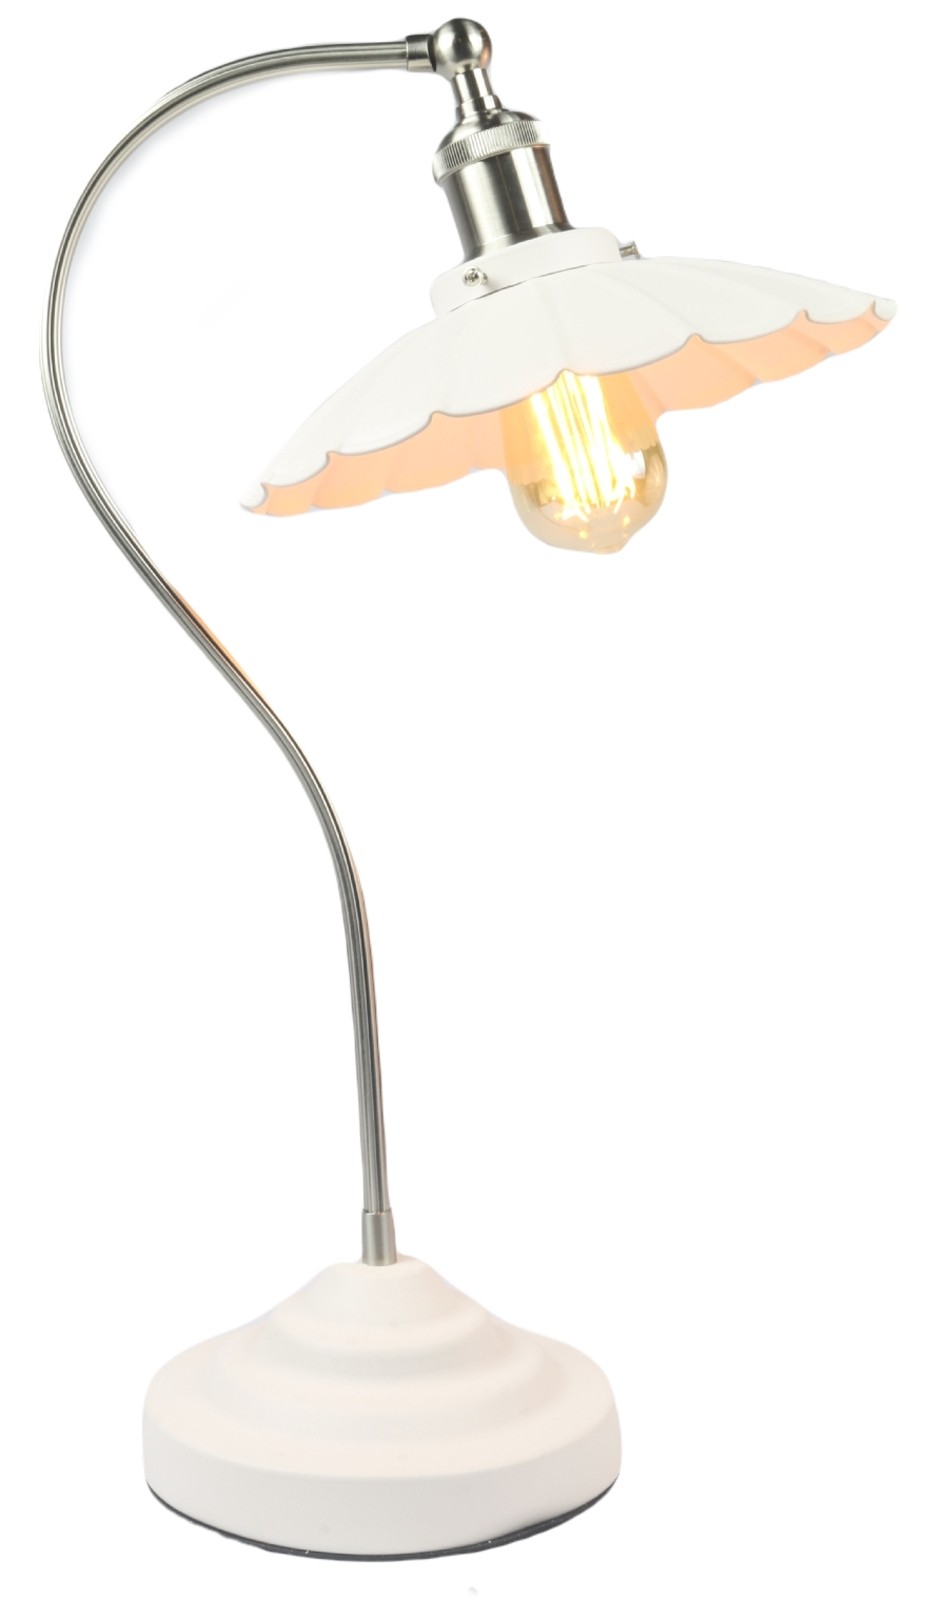 Daisy Lamp Textured White Shade/Base - Satin Chrome Arm 52cm (Bulbs not included)